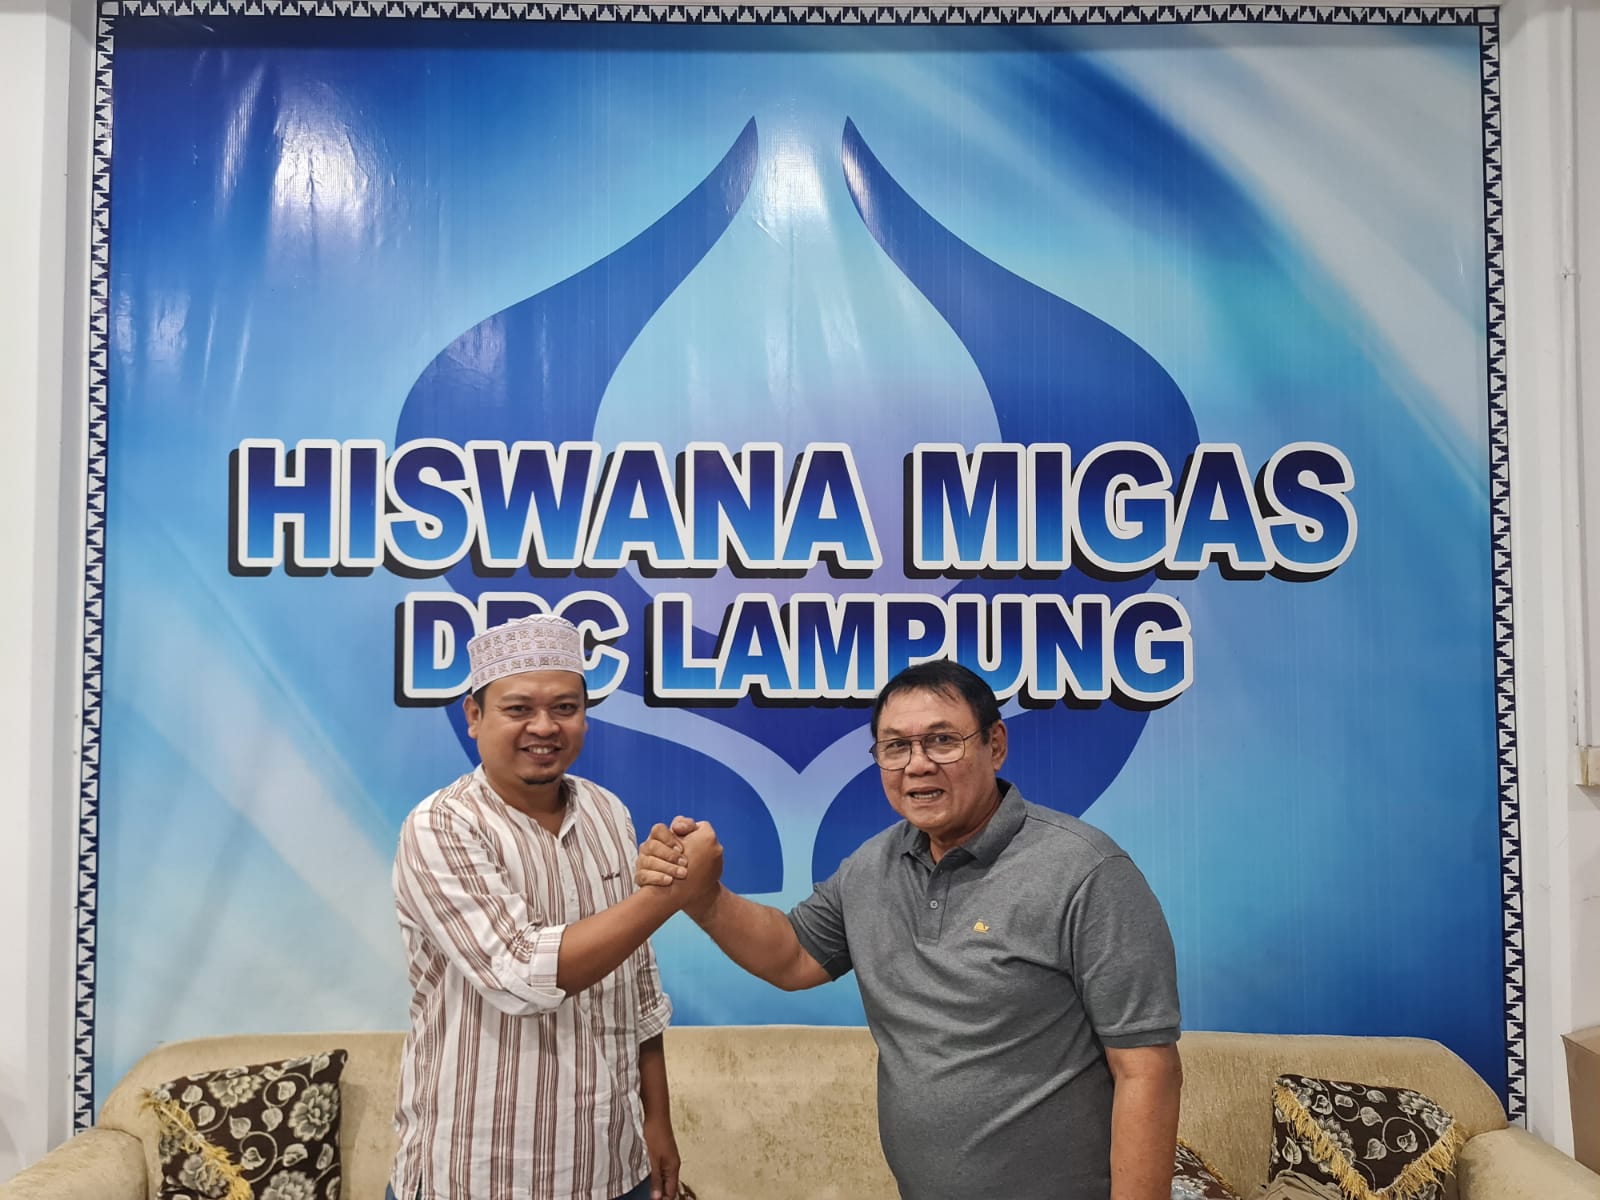 Dua kandidat Memperebutkan Kursi Ketua DPC HISWANA MIGAS